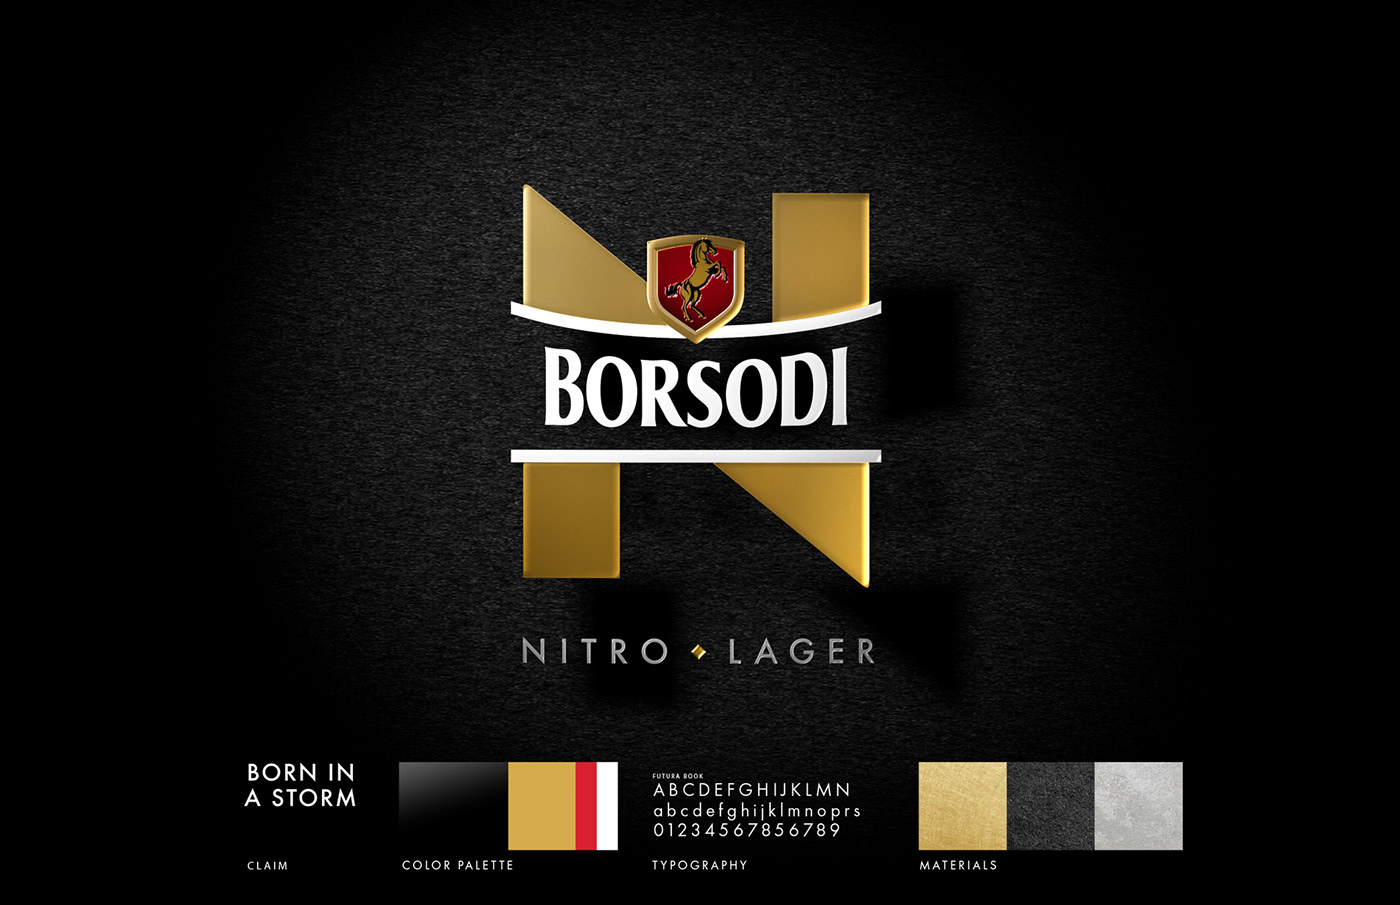 branding  beer nitro beer design art direction  graphic design  borsodi borsodi nitro Packaging packaging design